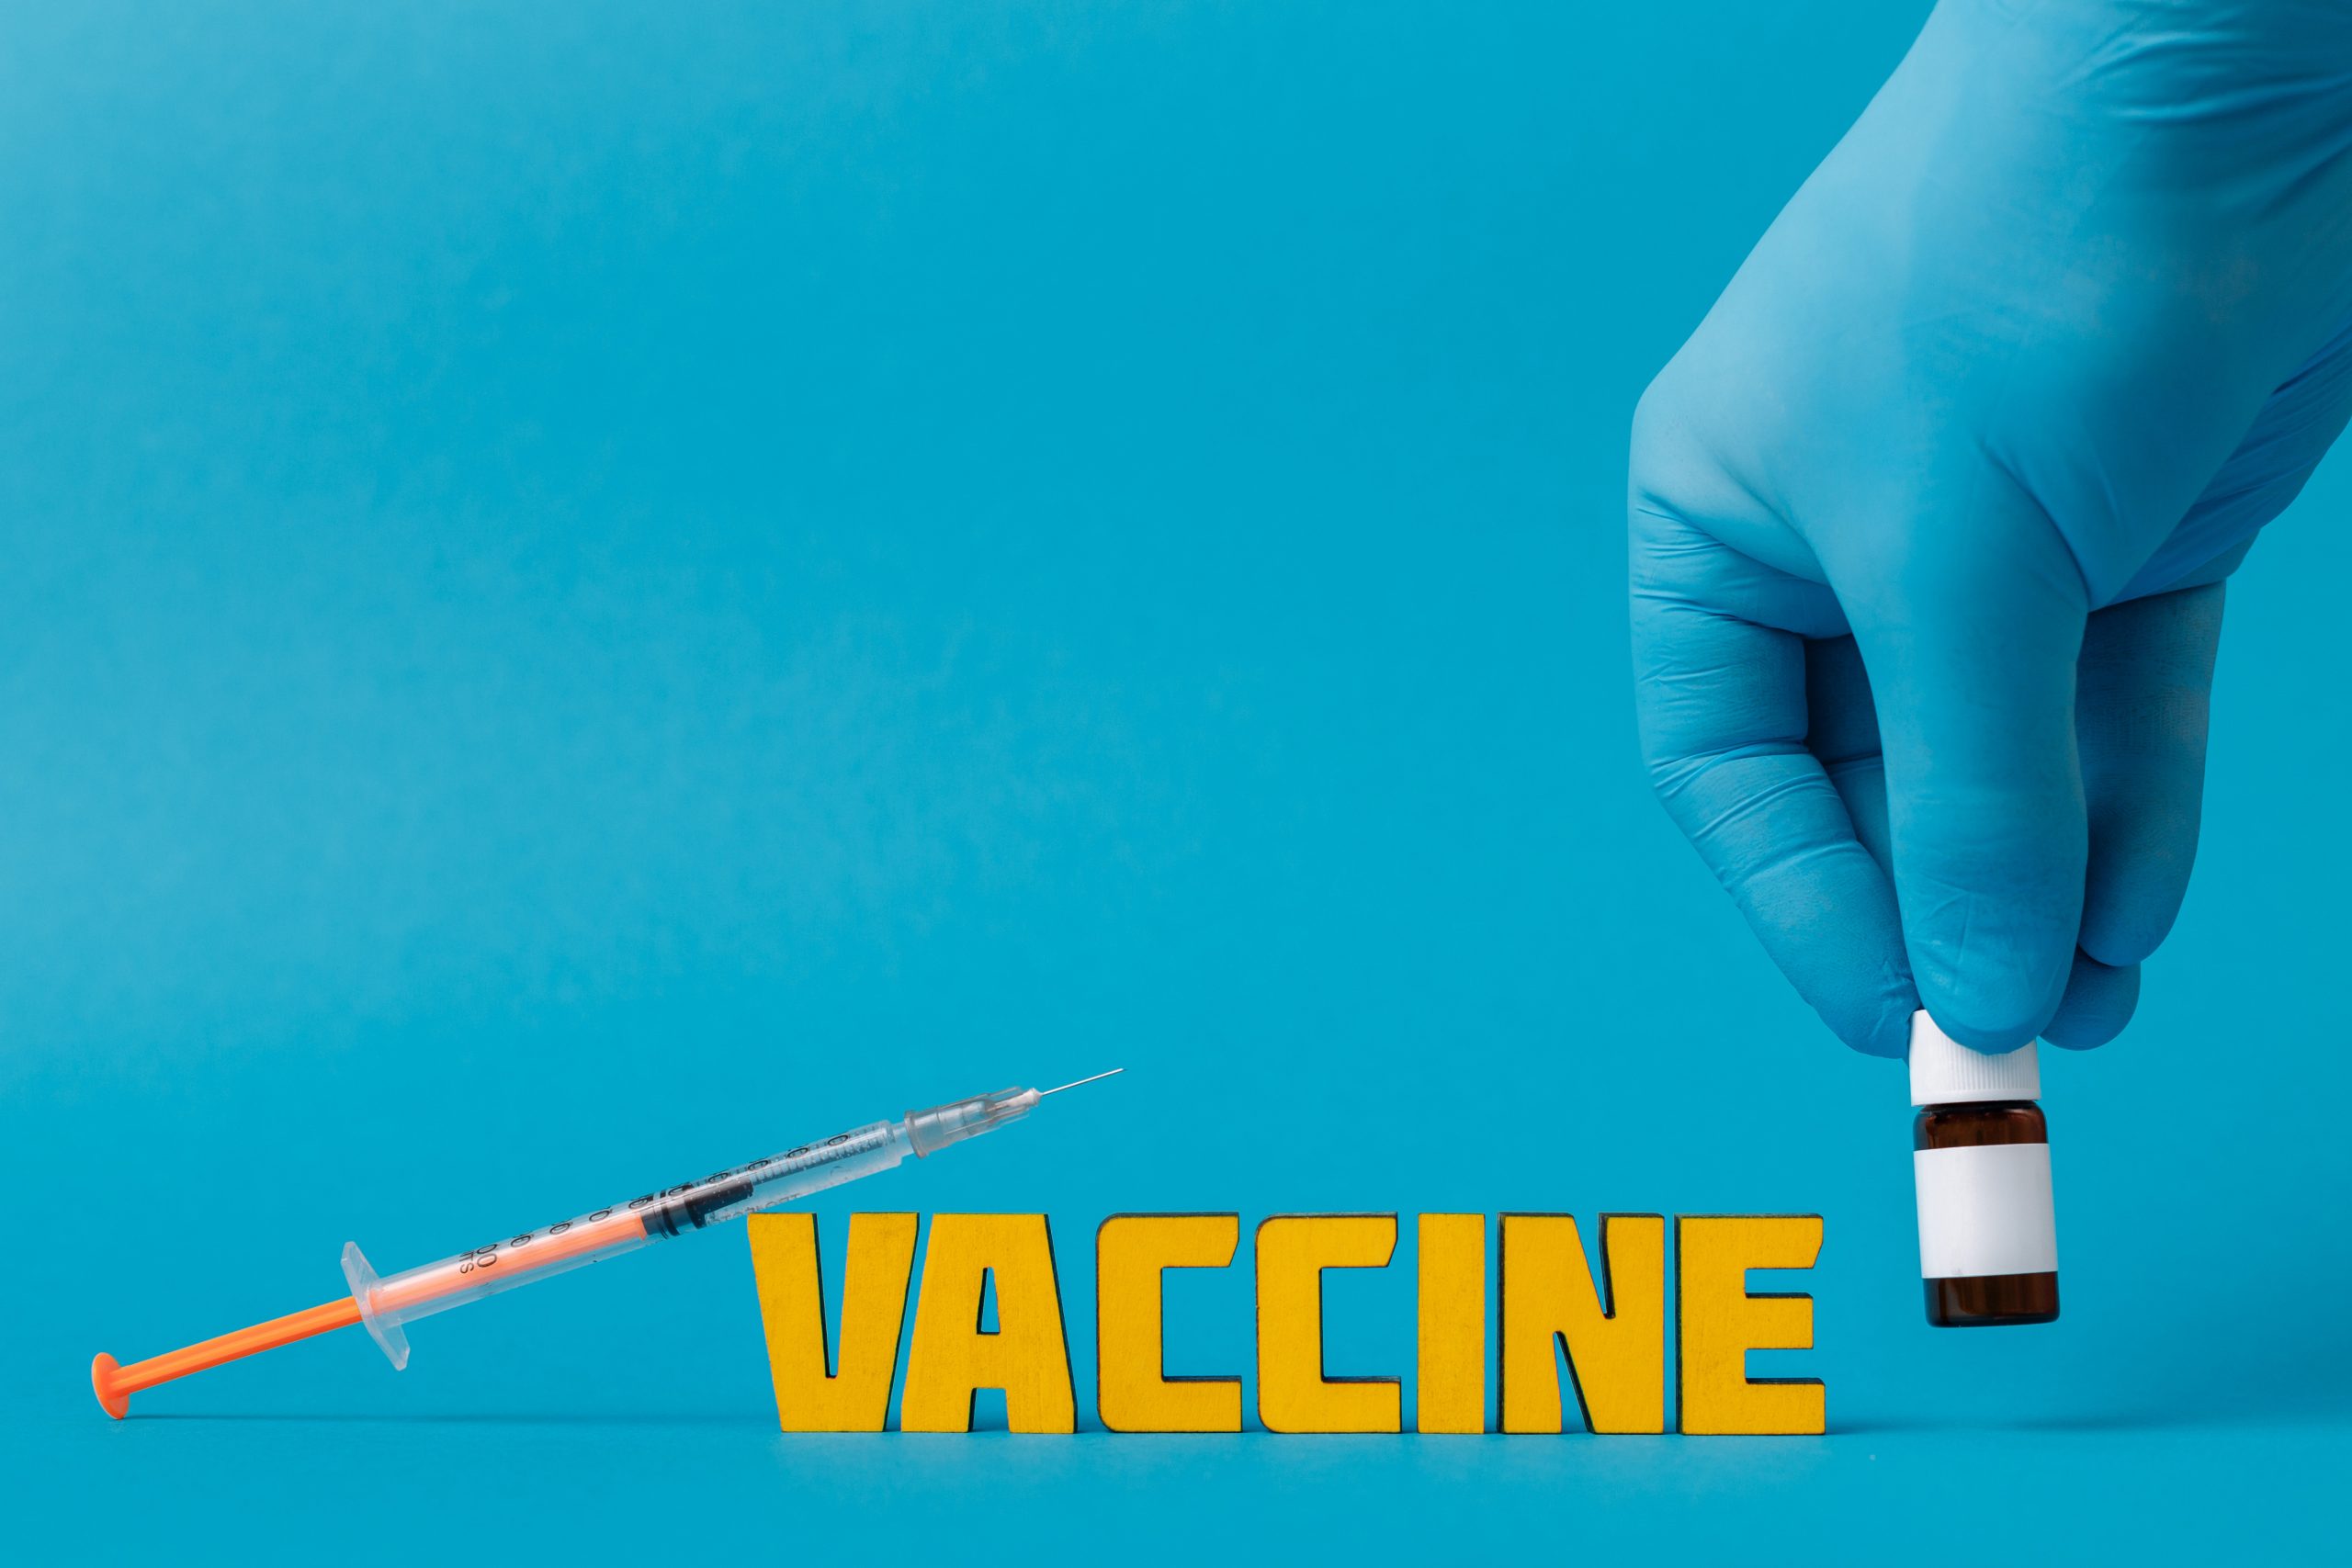 GGD IJsselland начнет вакцинацию против оспы обезьян с 1 августа — RTV Focus